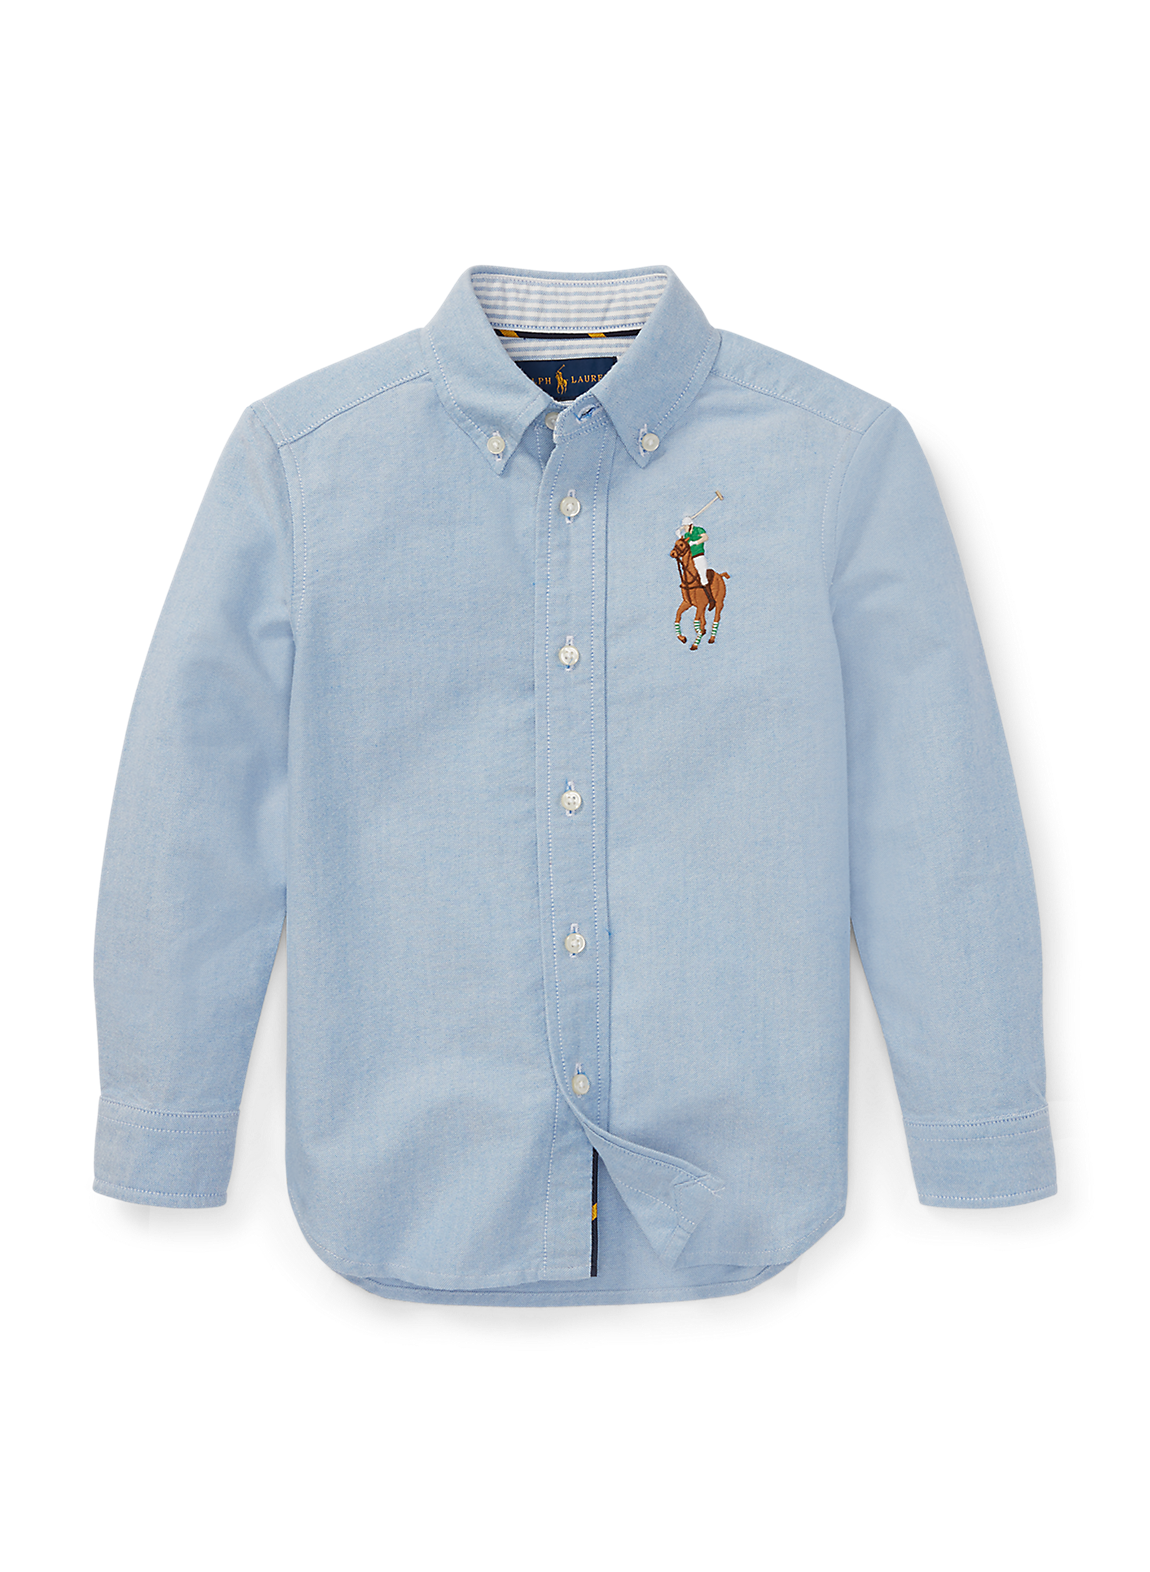 Big Pony コットン オックスフォード シャツワイシャツ/ネルシャツ 